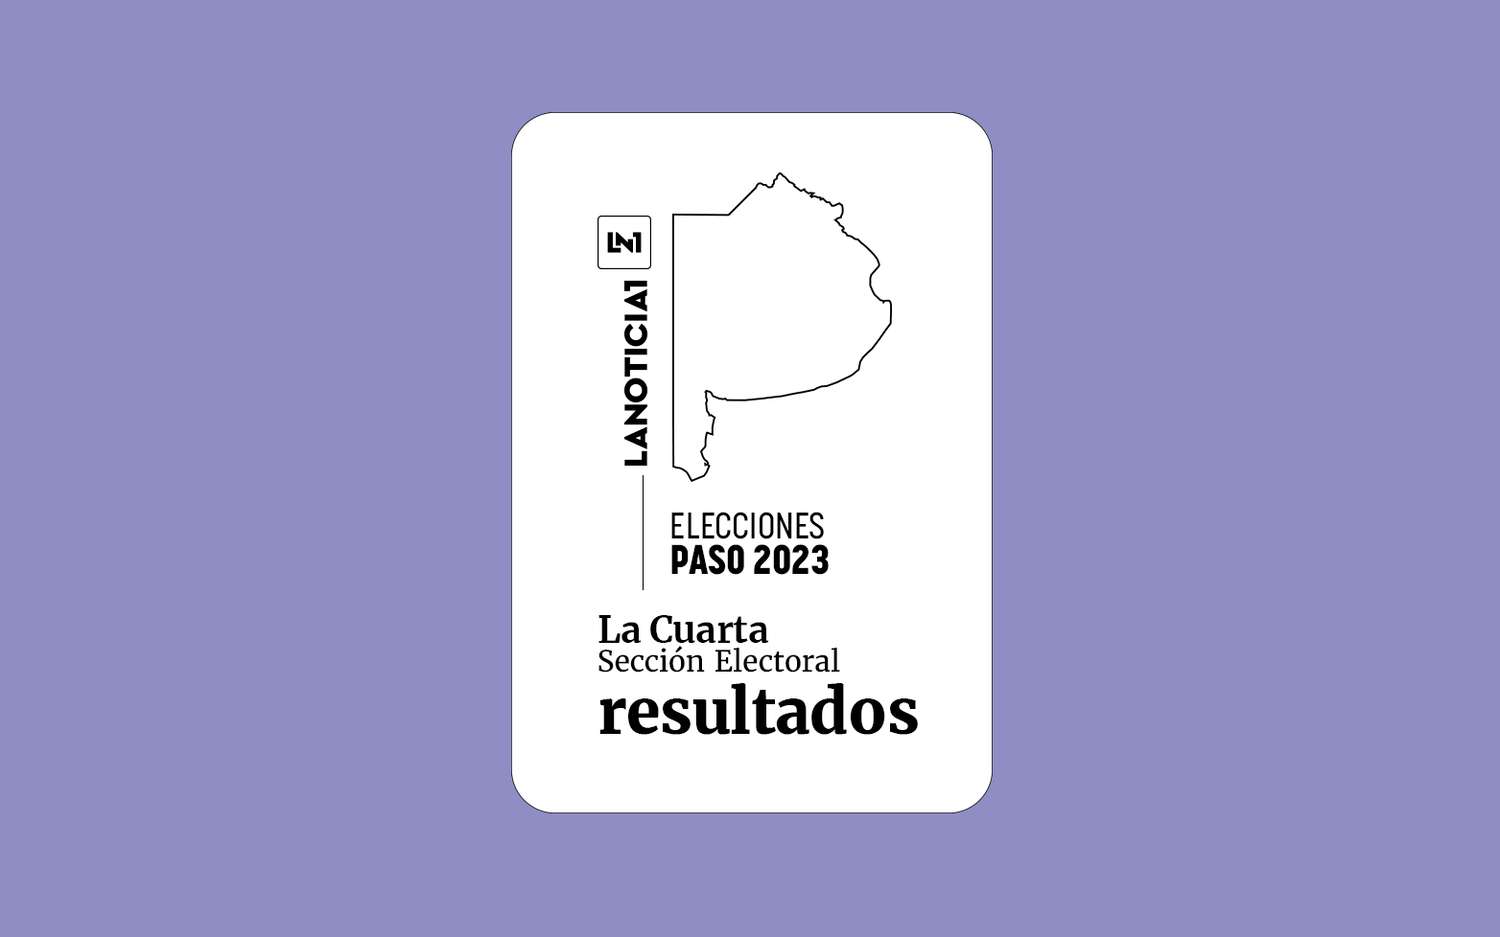 Elecciones PASO 2023: Resultados oficiales en la Cuarta Sección Electoral